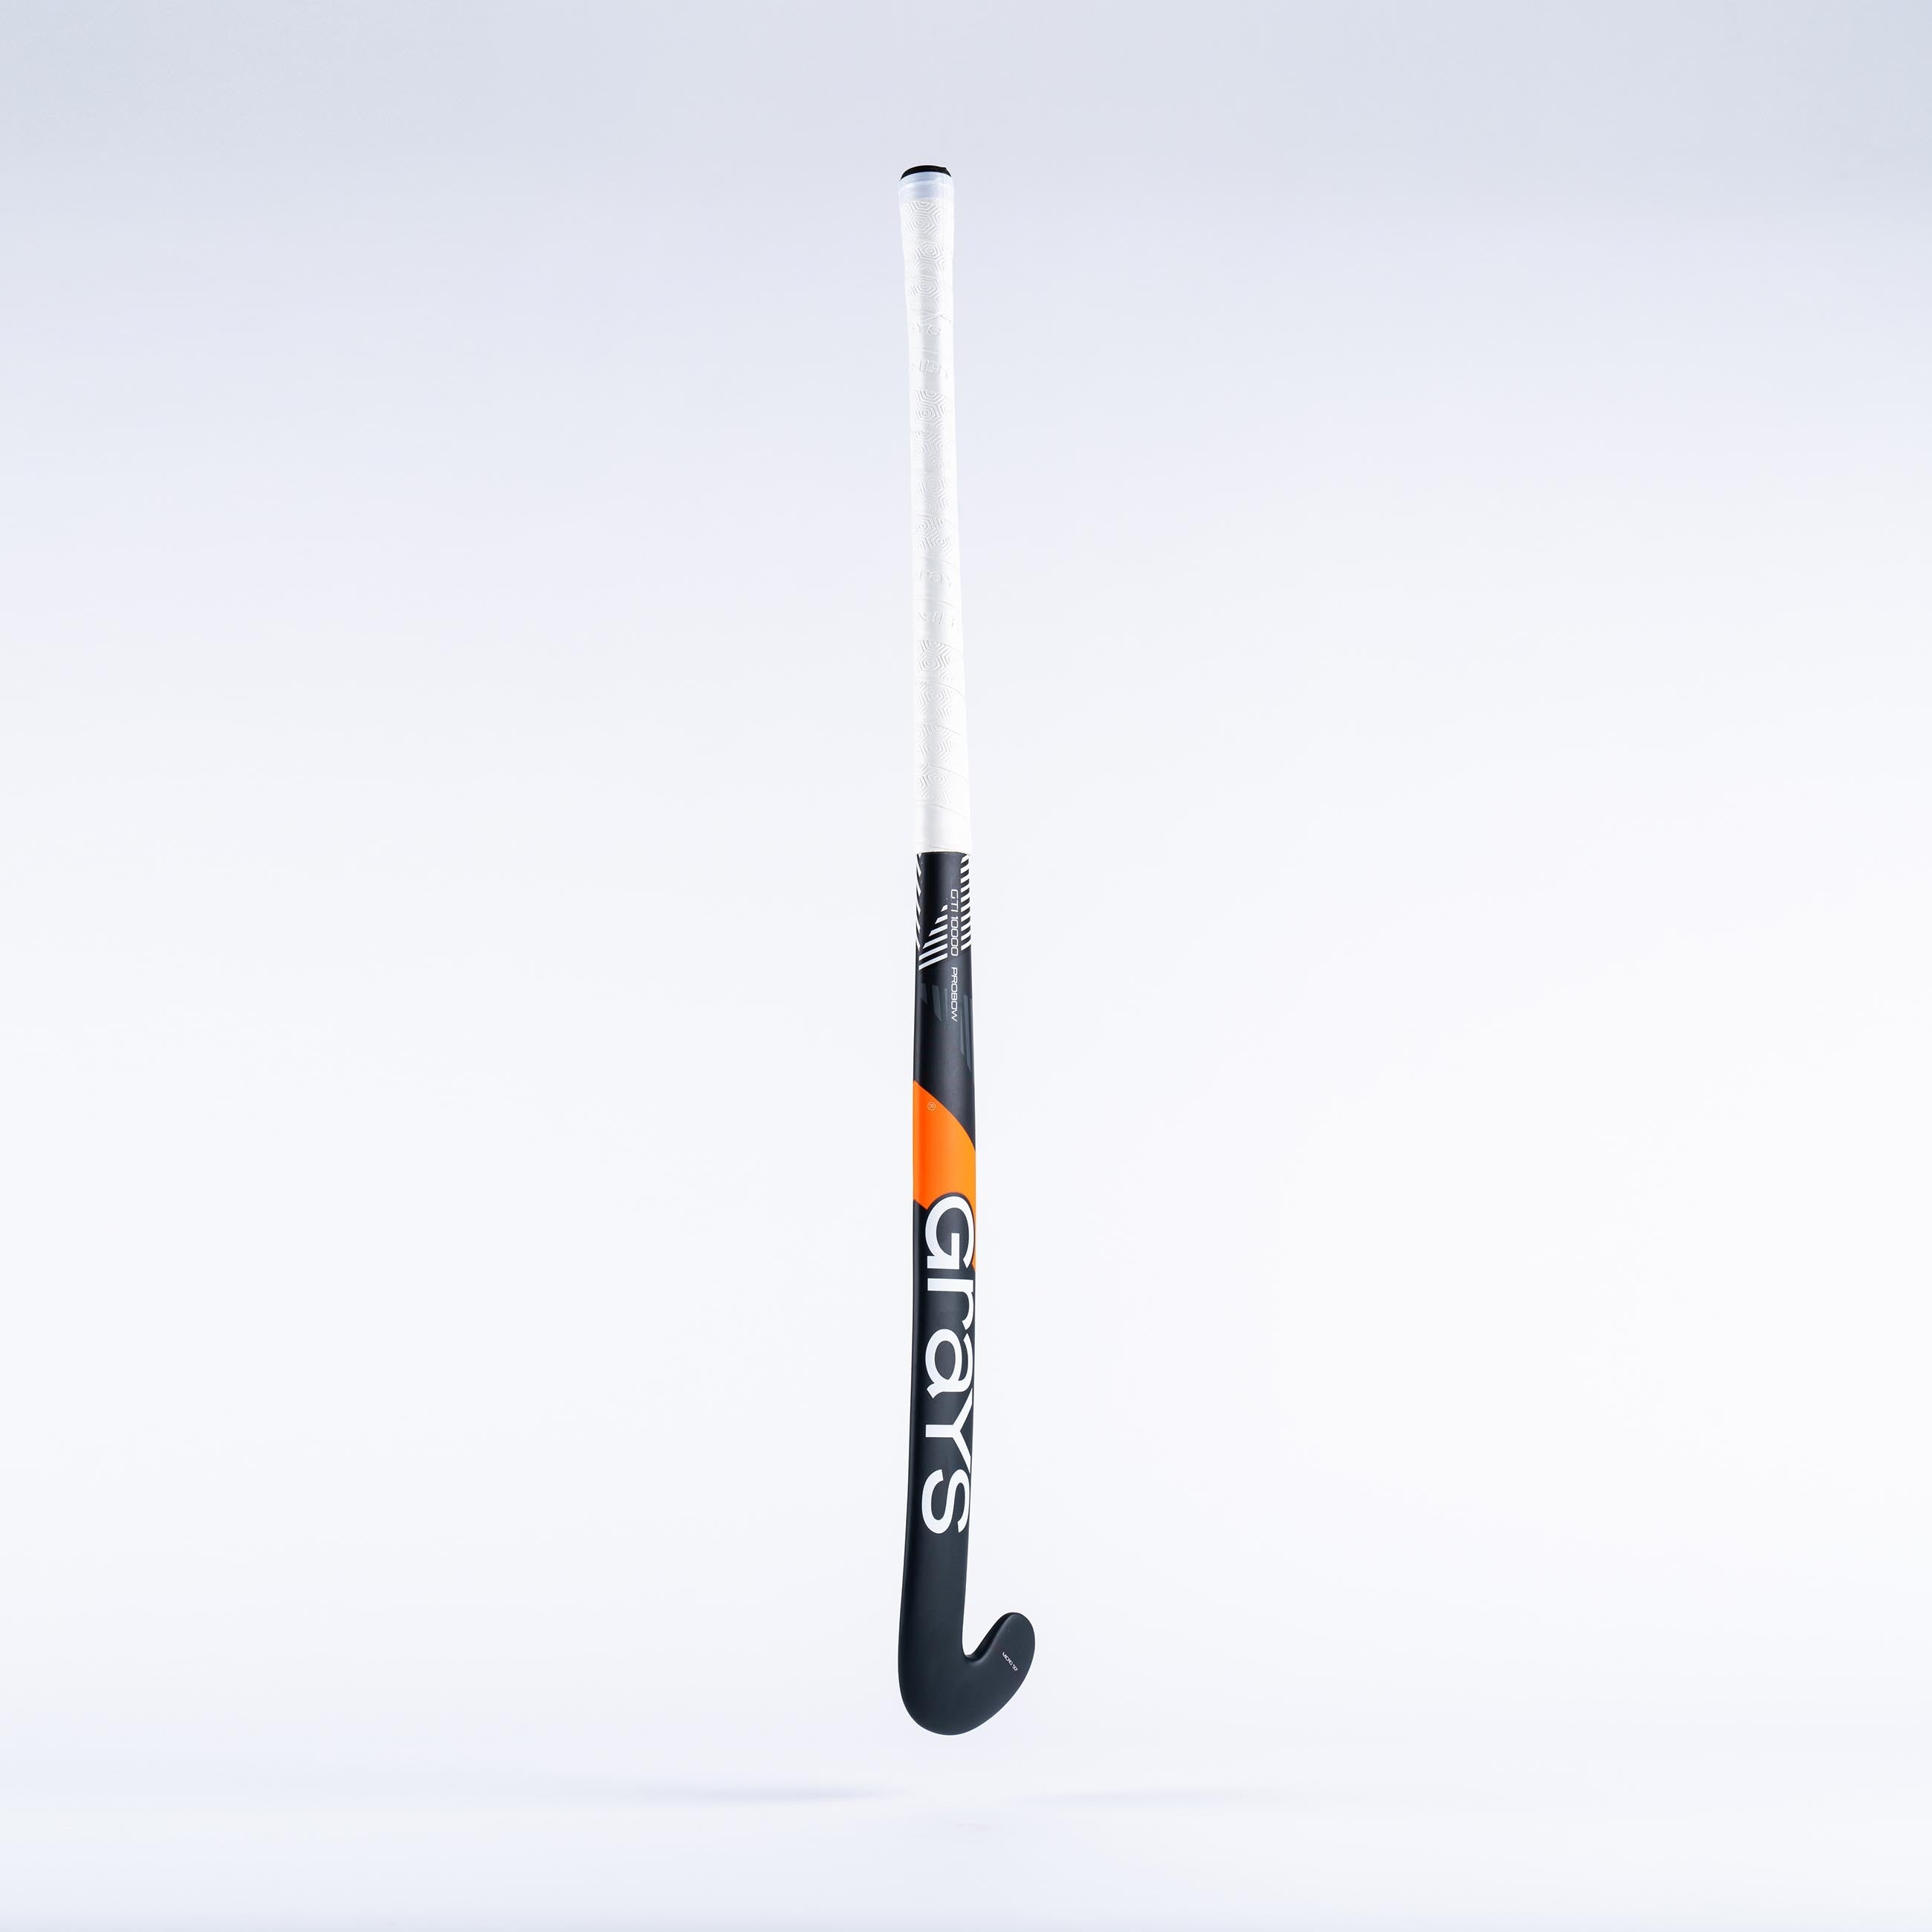 GTI10000 Probow composite indoor hockeystick